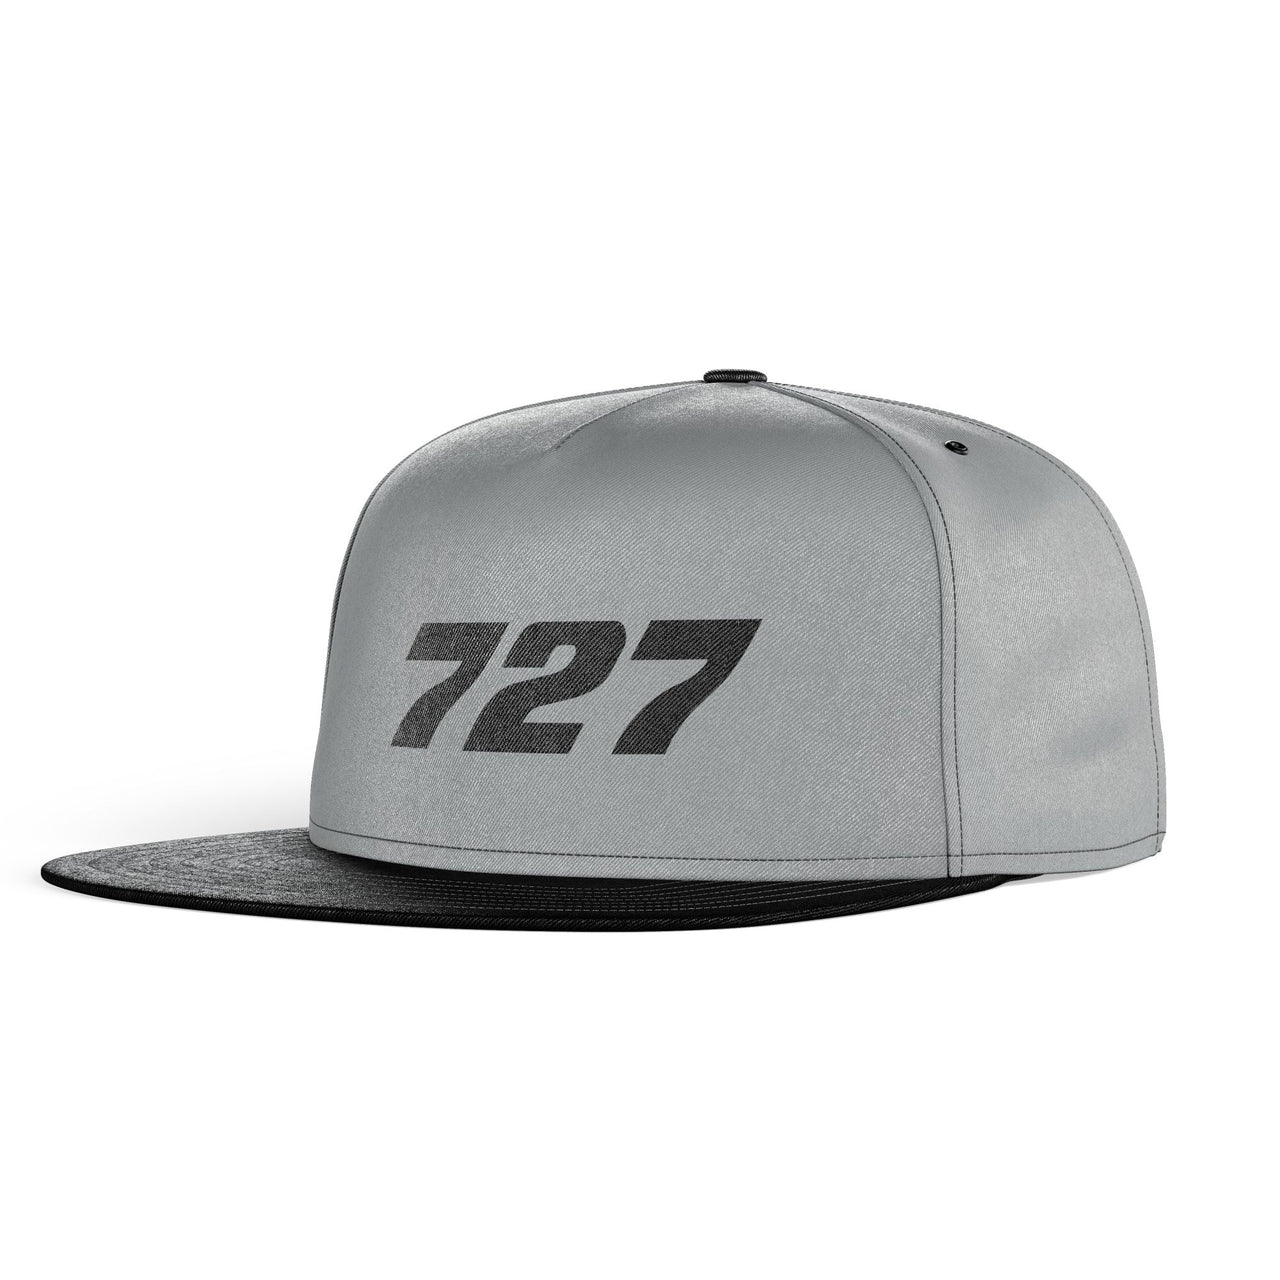 727 Flat Text Designed Snapback Caps & Hats